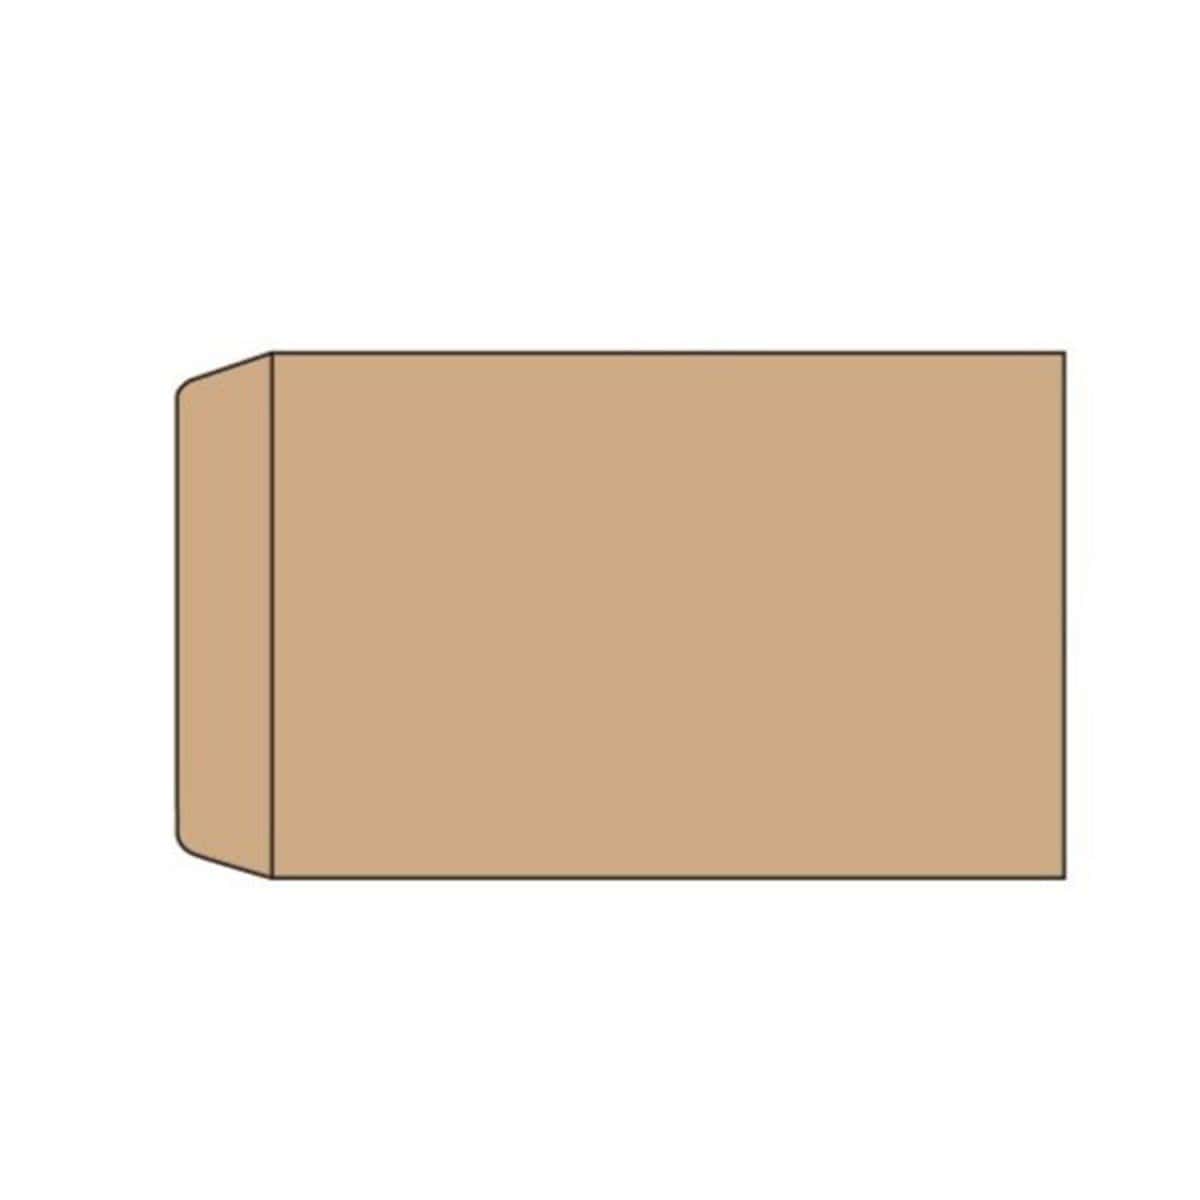 Manilla/Brown Envelope 7" x 10 (5pcs)